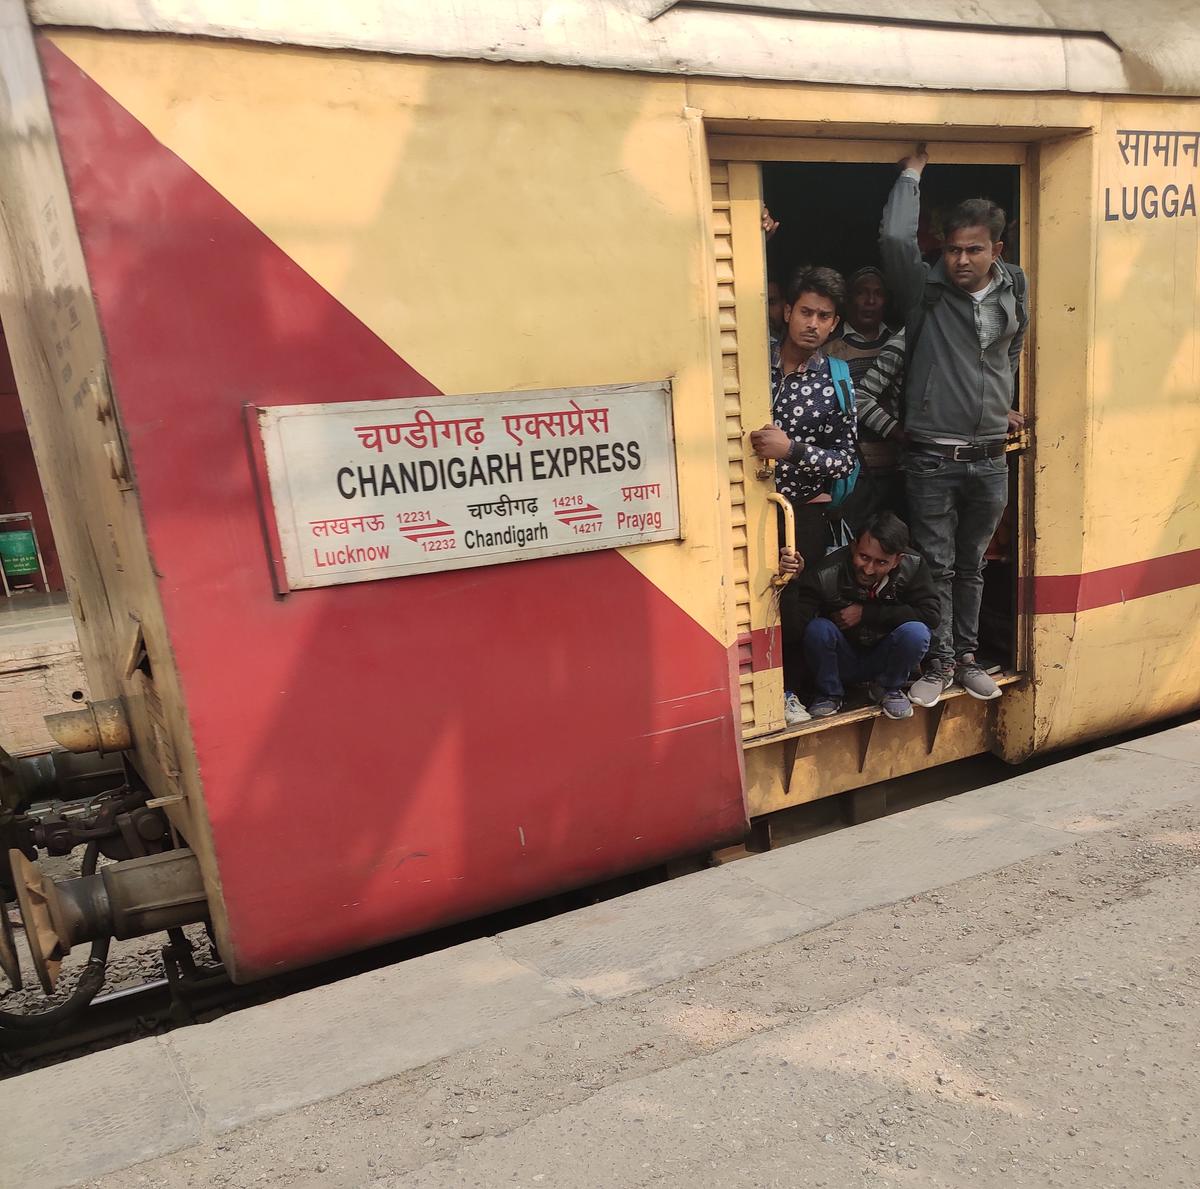 यात्रीगण कृपया ध्यान दें! लखनऊ चंडीगढ़ सुपरफास्ट एक्सप्रेस (12231, 12232) देखकर न करें भरोसा, नहीं तो जिंदगीभर पड़ेगा पछताना